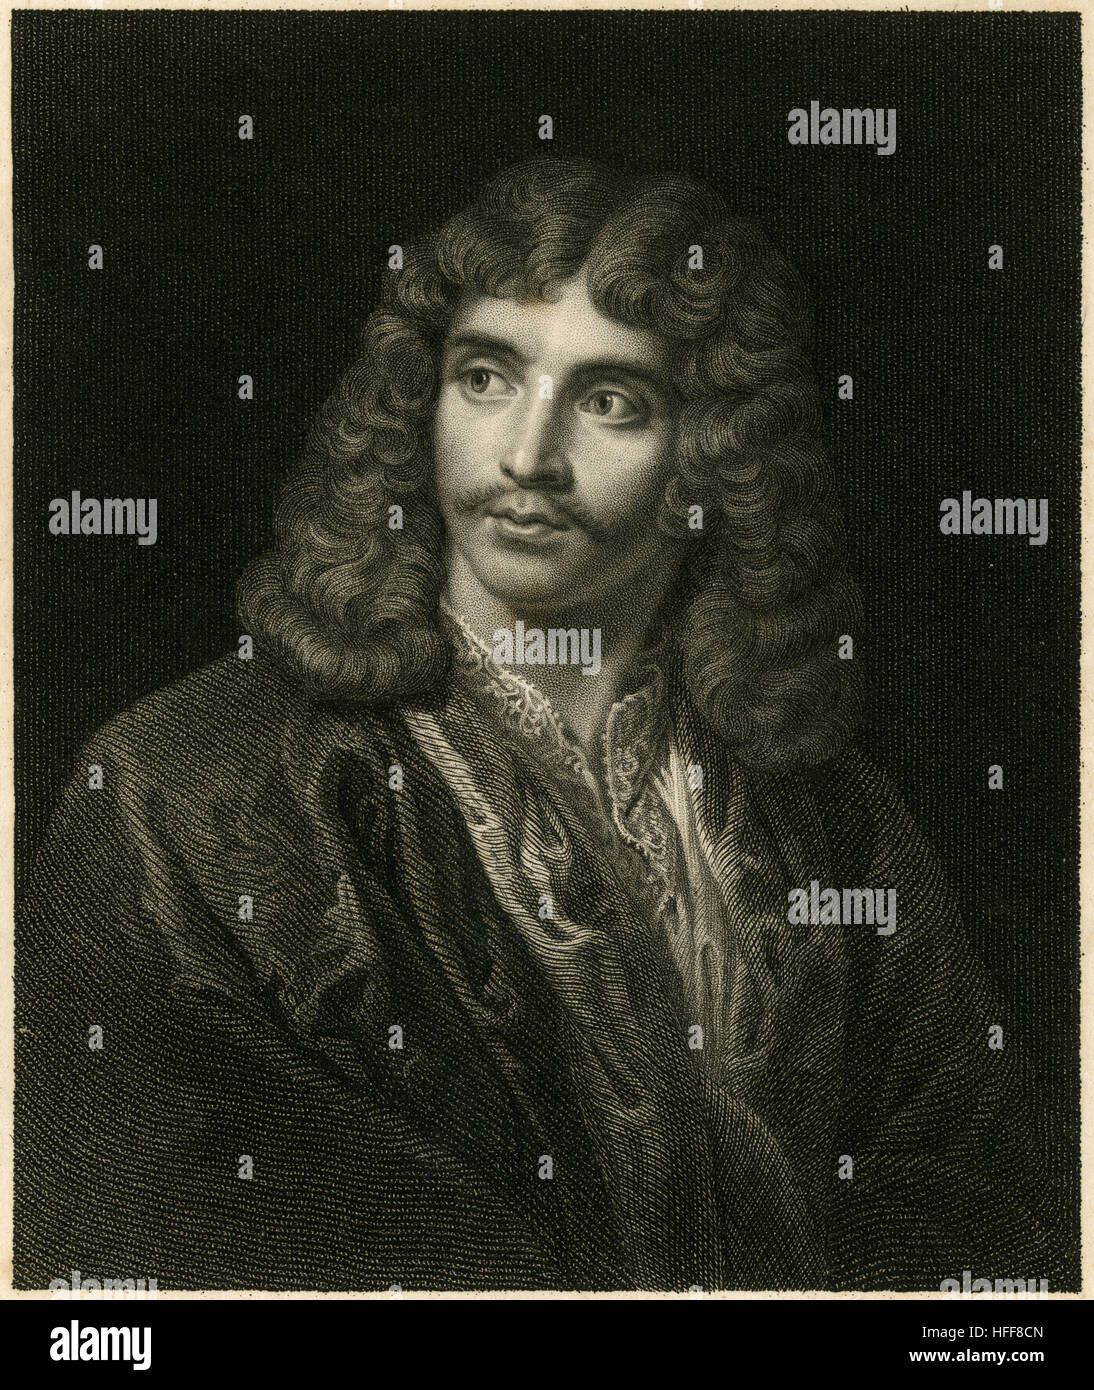 Gravure ancienne c1840 de Molière. Jean-Baptiste Poquelin, connu sous le nom de Molière (1622-1673), était un acteur et dramaturge français qui est considéré comme l'un des plus grands maîtres de la comédie dans la littérature occidentale. SOURCE : gravure originale. Banque D'Images